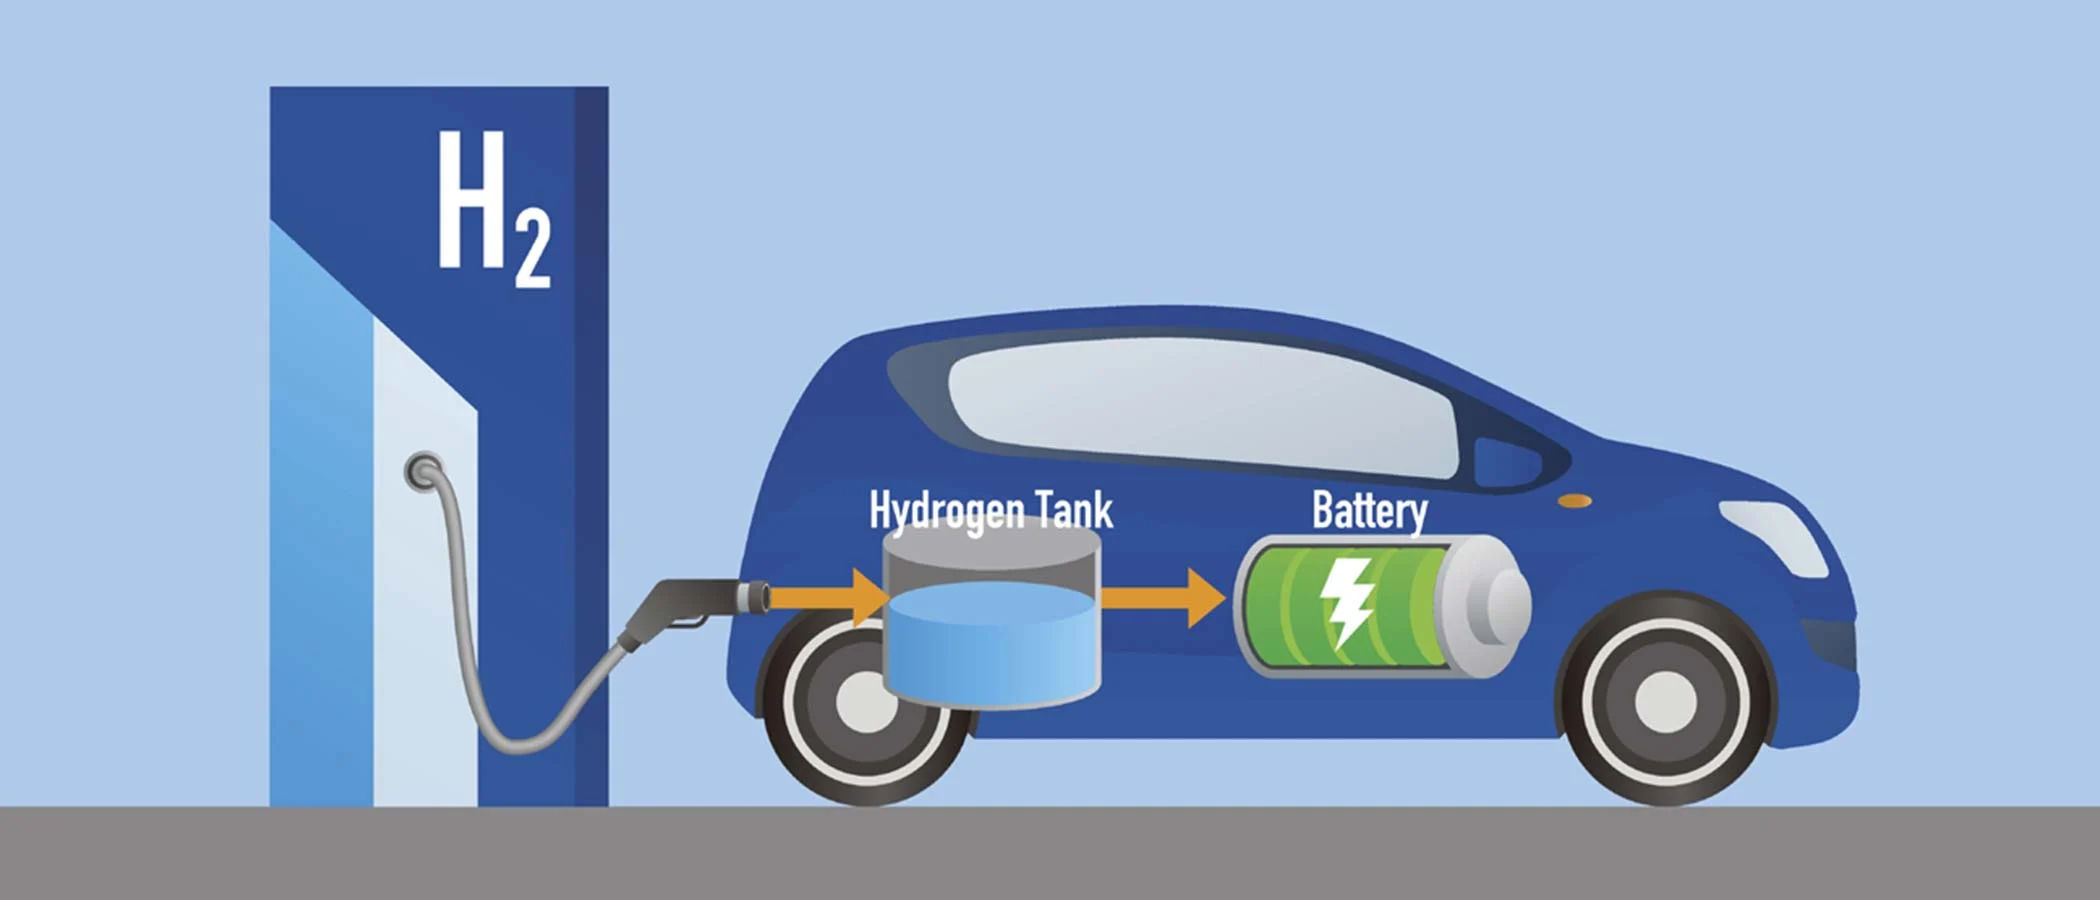 استخدام الهيدروجين كوقود للسيارات